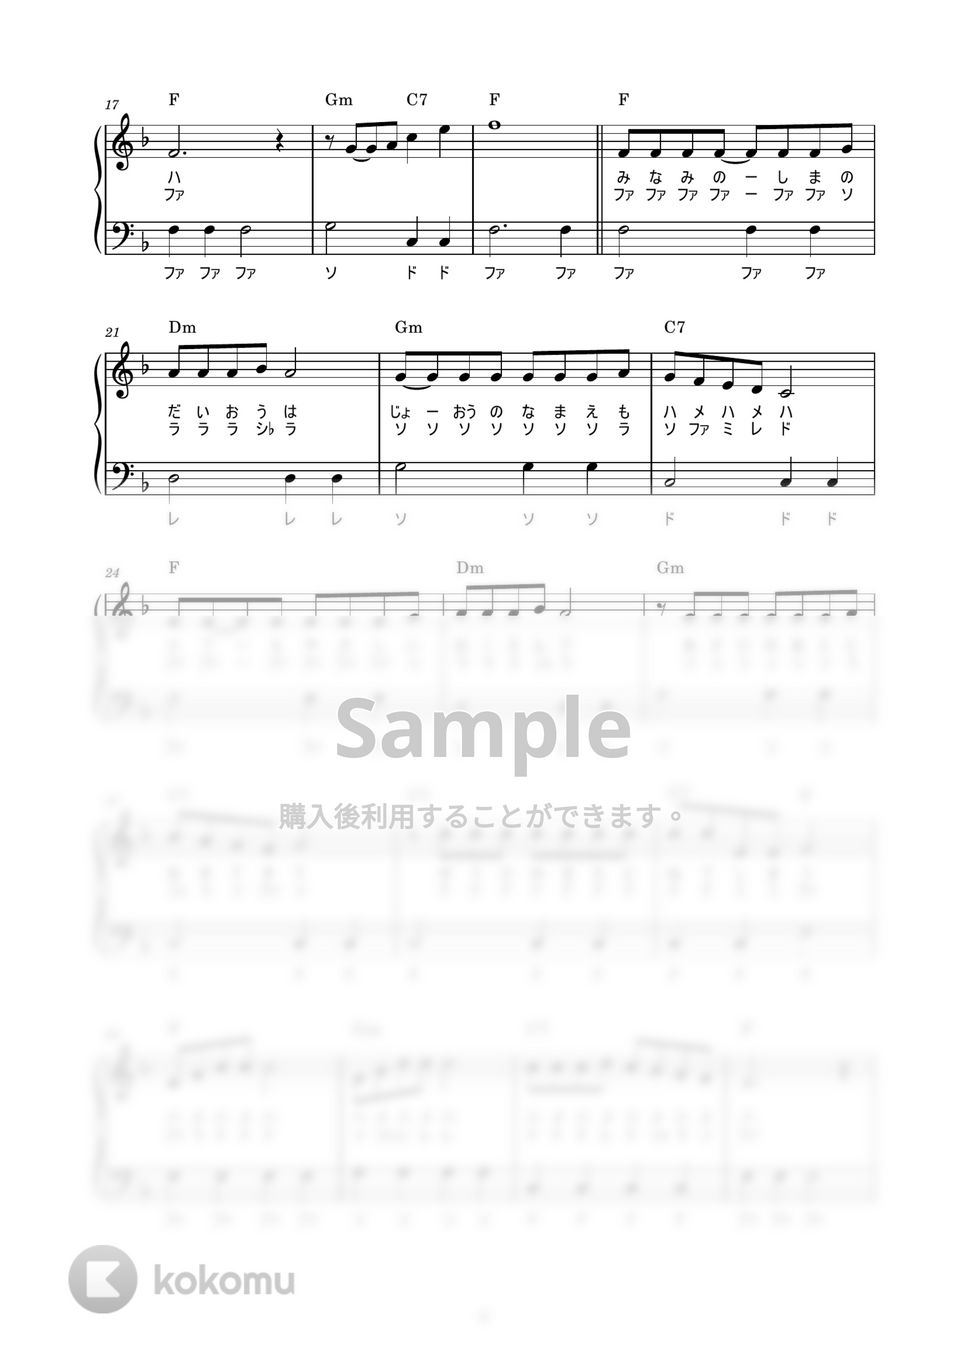 南の島のハメハメハ大王 (かんたん / 歌詞付き / ドレミ付き / 初心者) by piano.tokyo